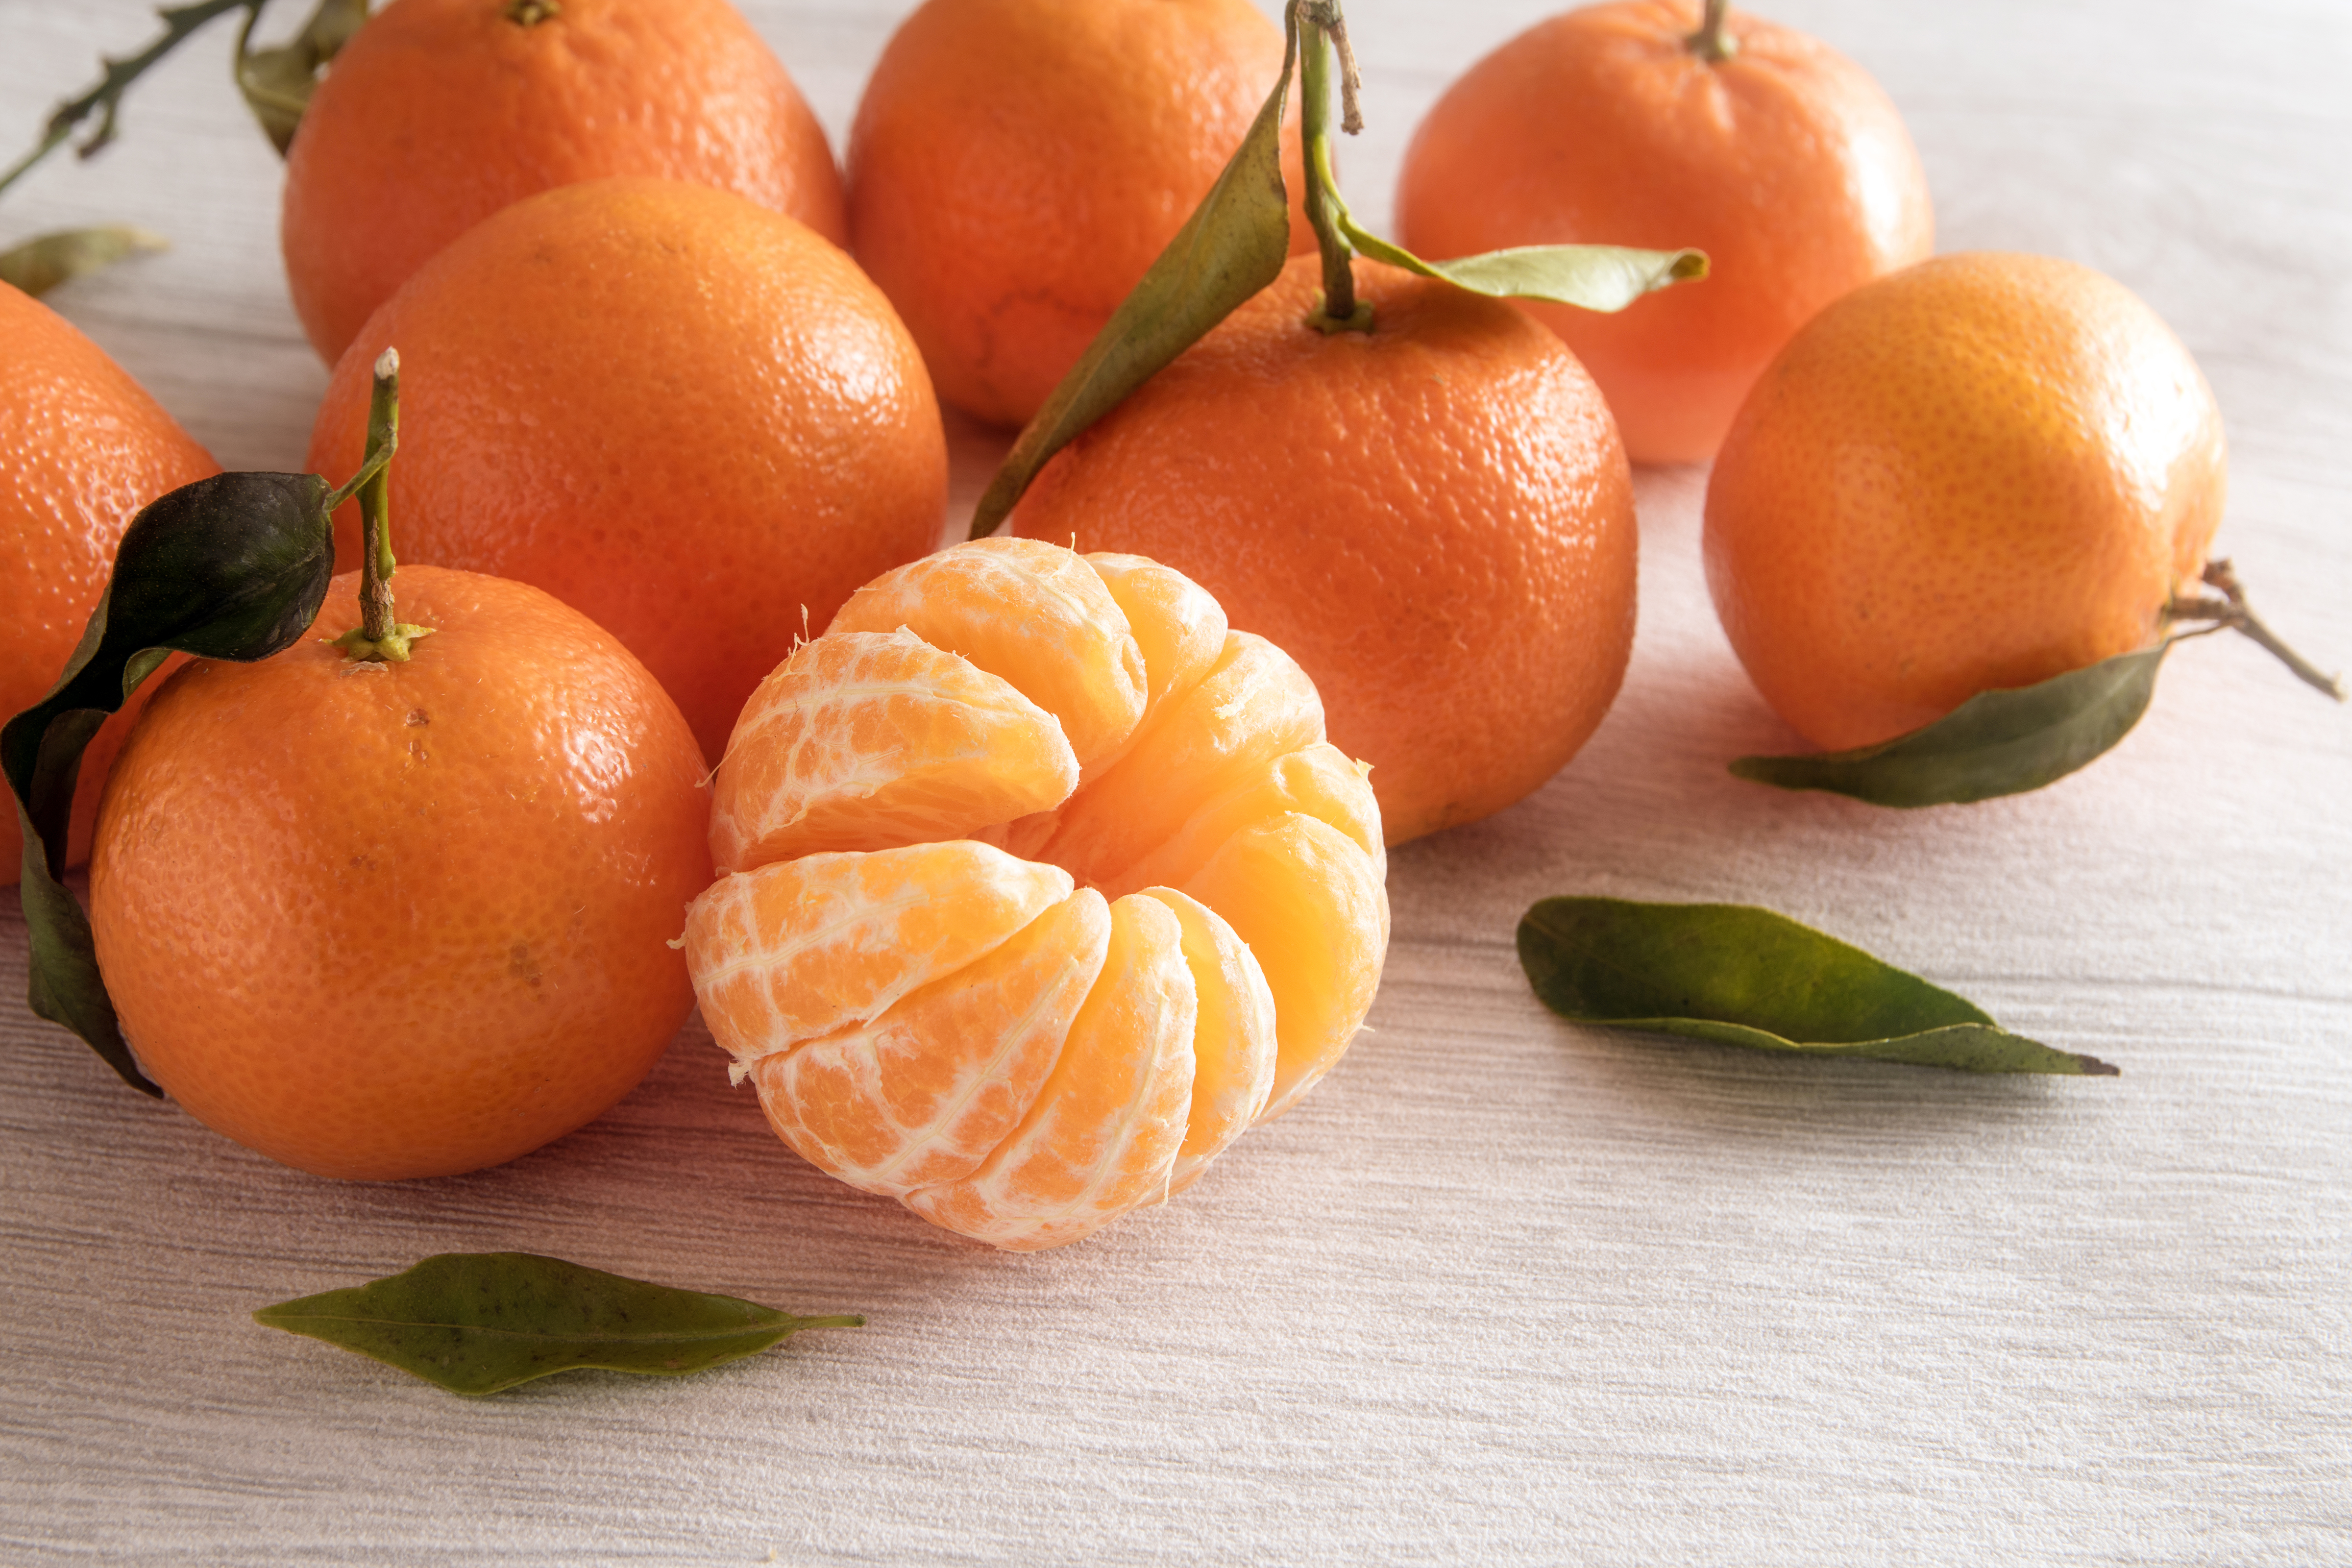 What Are Mandarin Oranges?